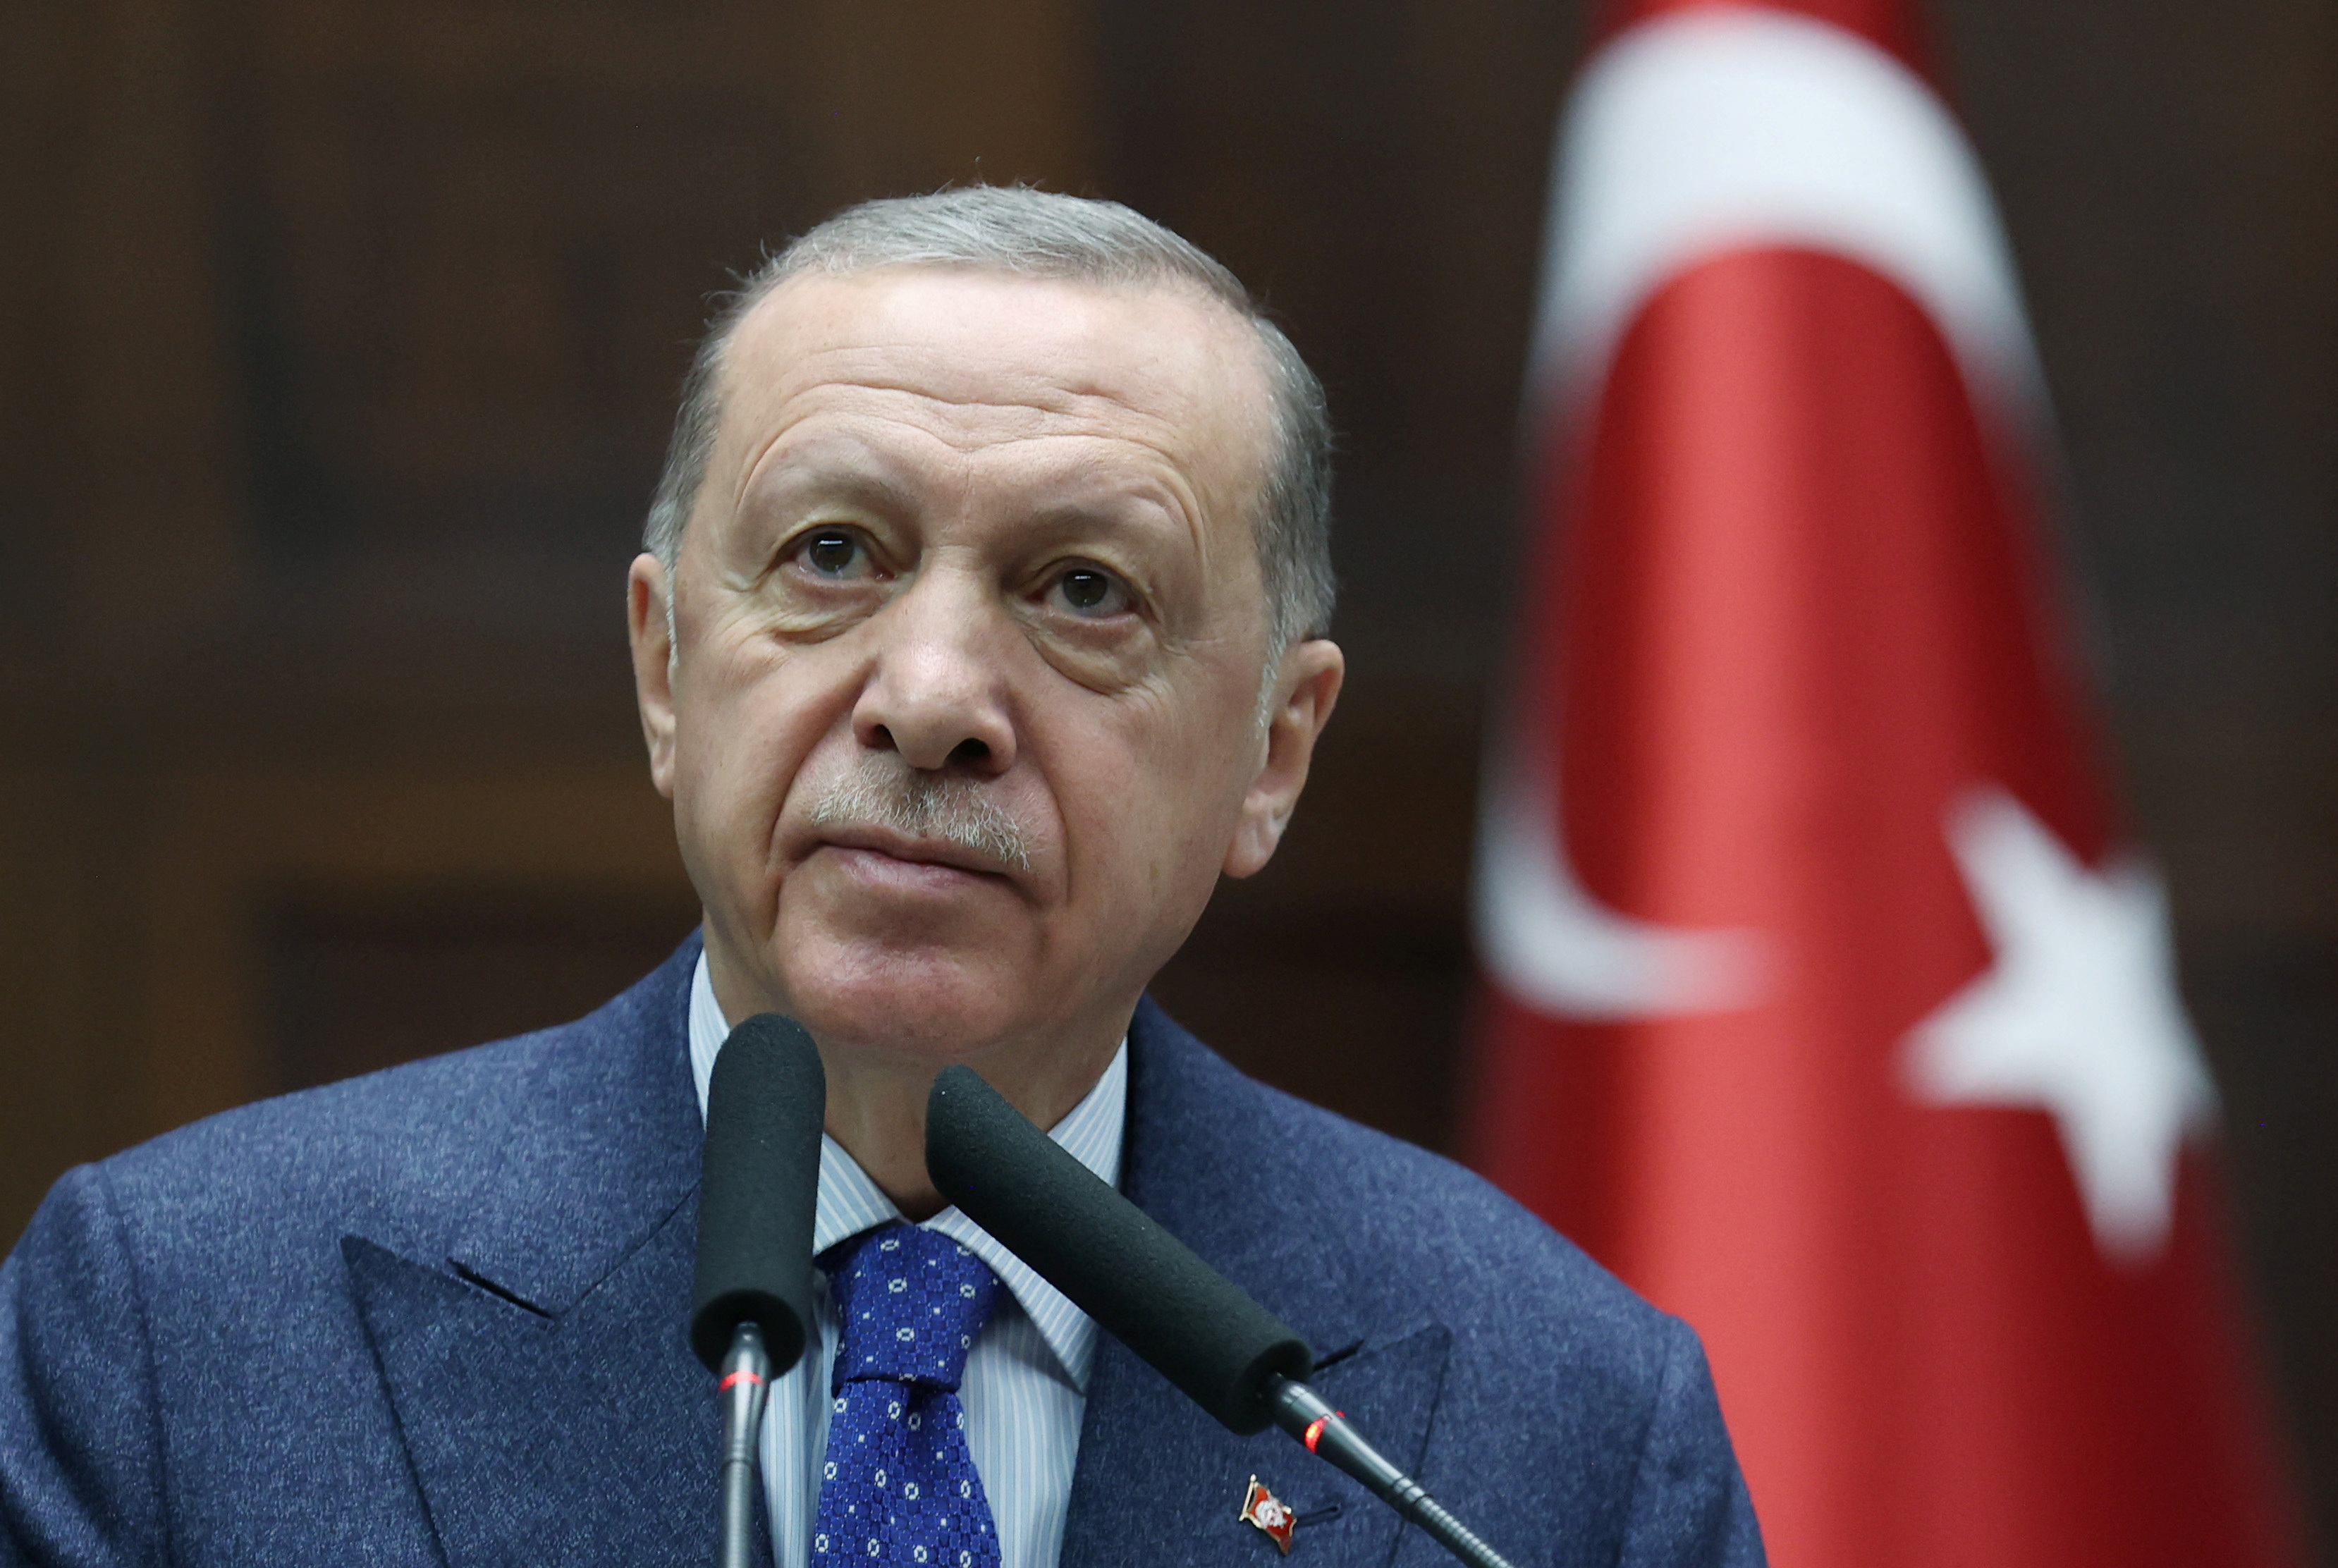 El Presidente Recep Tayyip Erdogan, que ha gobernado Turquía durante dos décadas, se enfrenta a unas elecciones en mayo que ya iban a ser difíciles para él, gracias a una economía tambaleante y a una tasa de inflación que ha superado el 50% por sus insensatas políticas monetarias. (REUTERS)